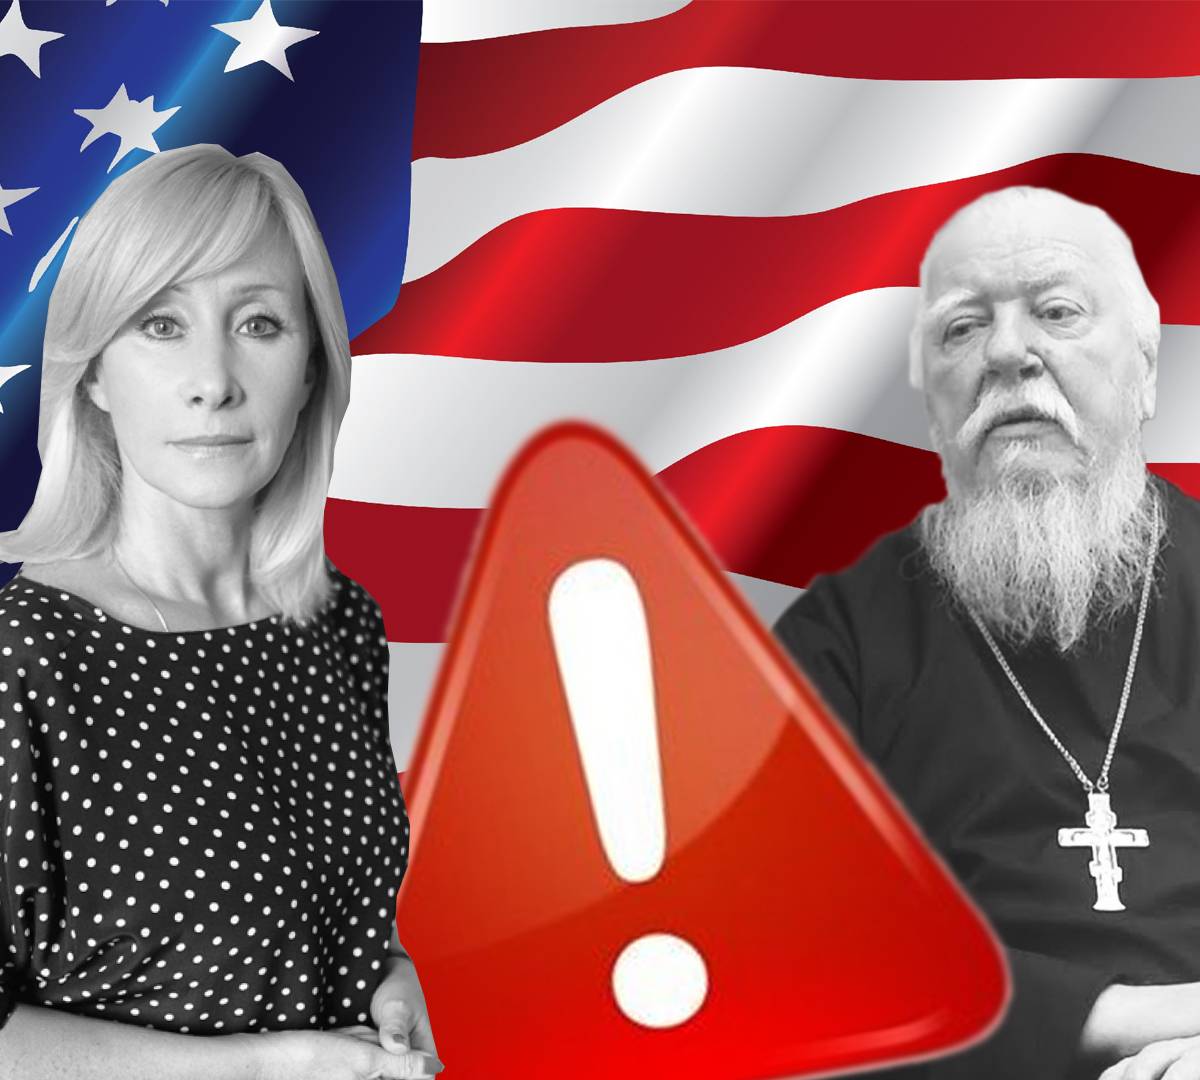 Американская агентура во власти России атакует семью и Церковь